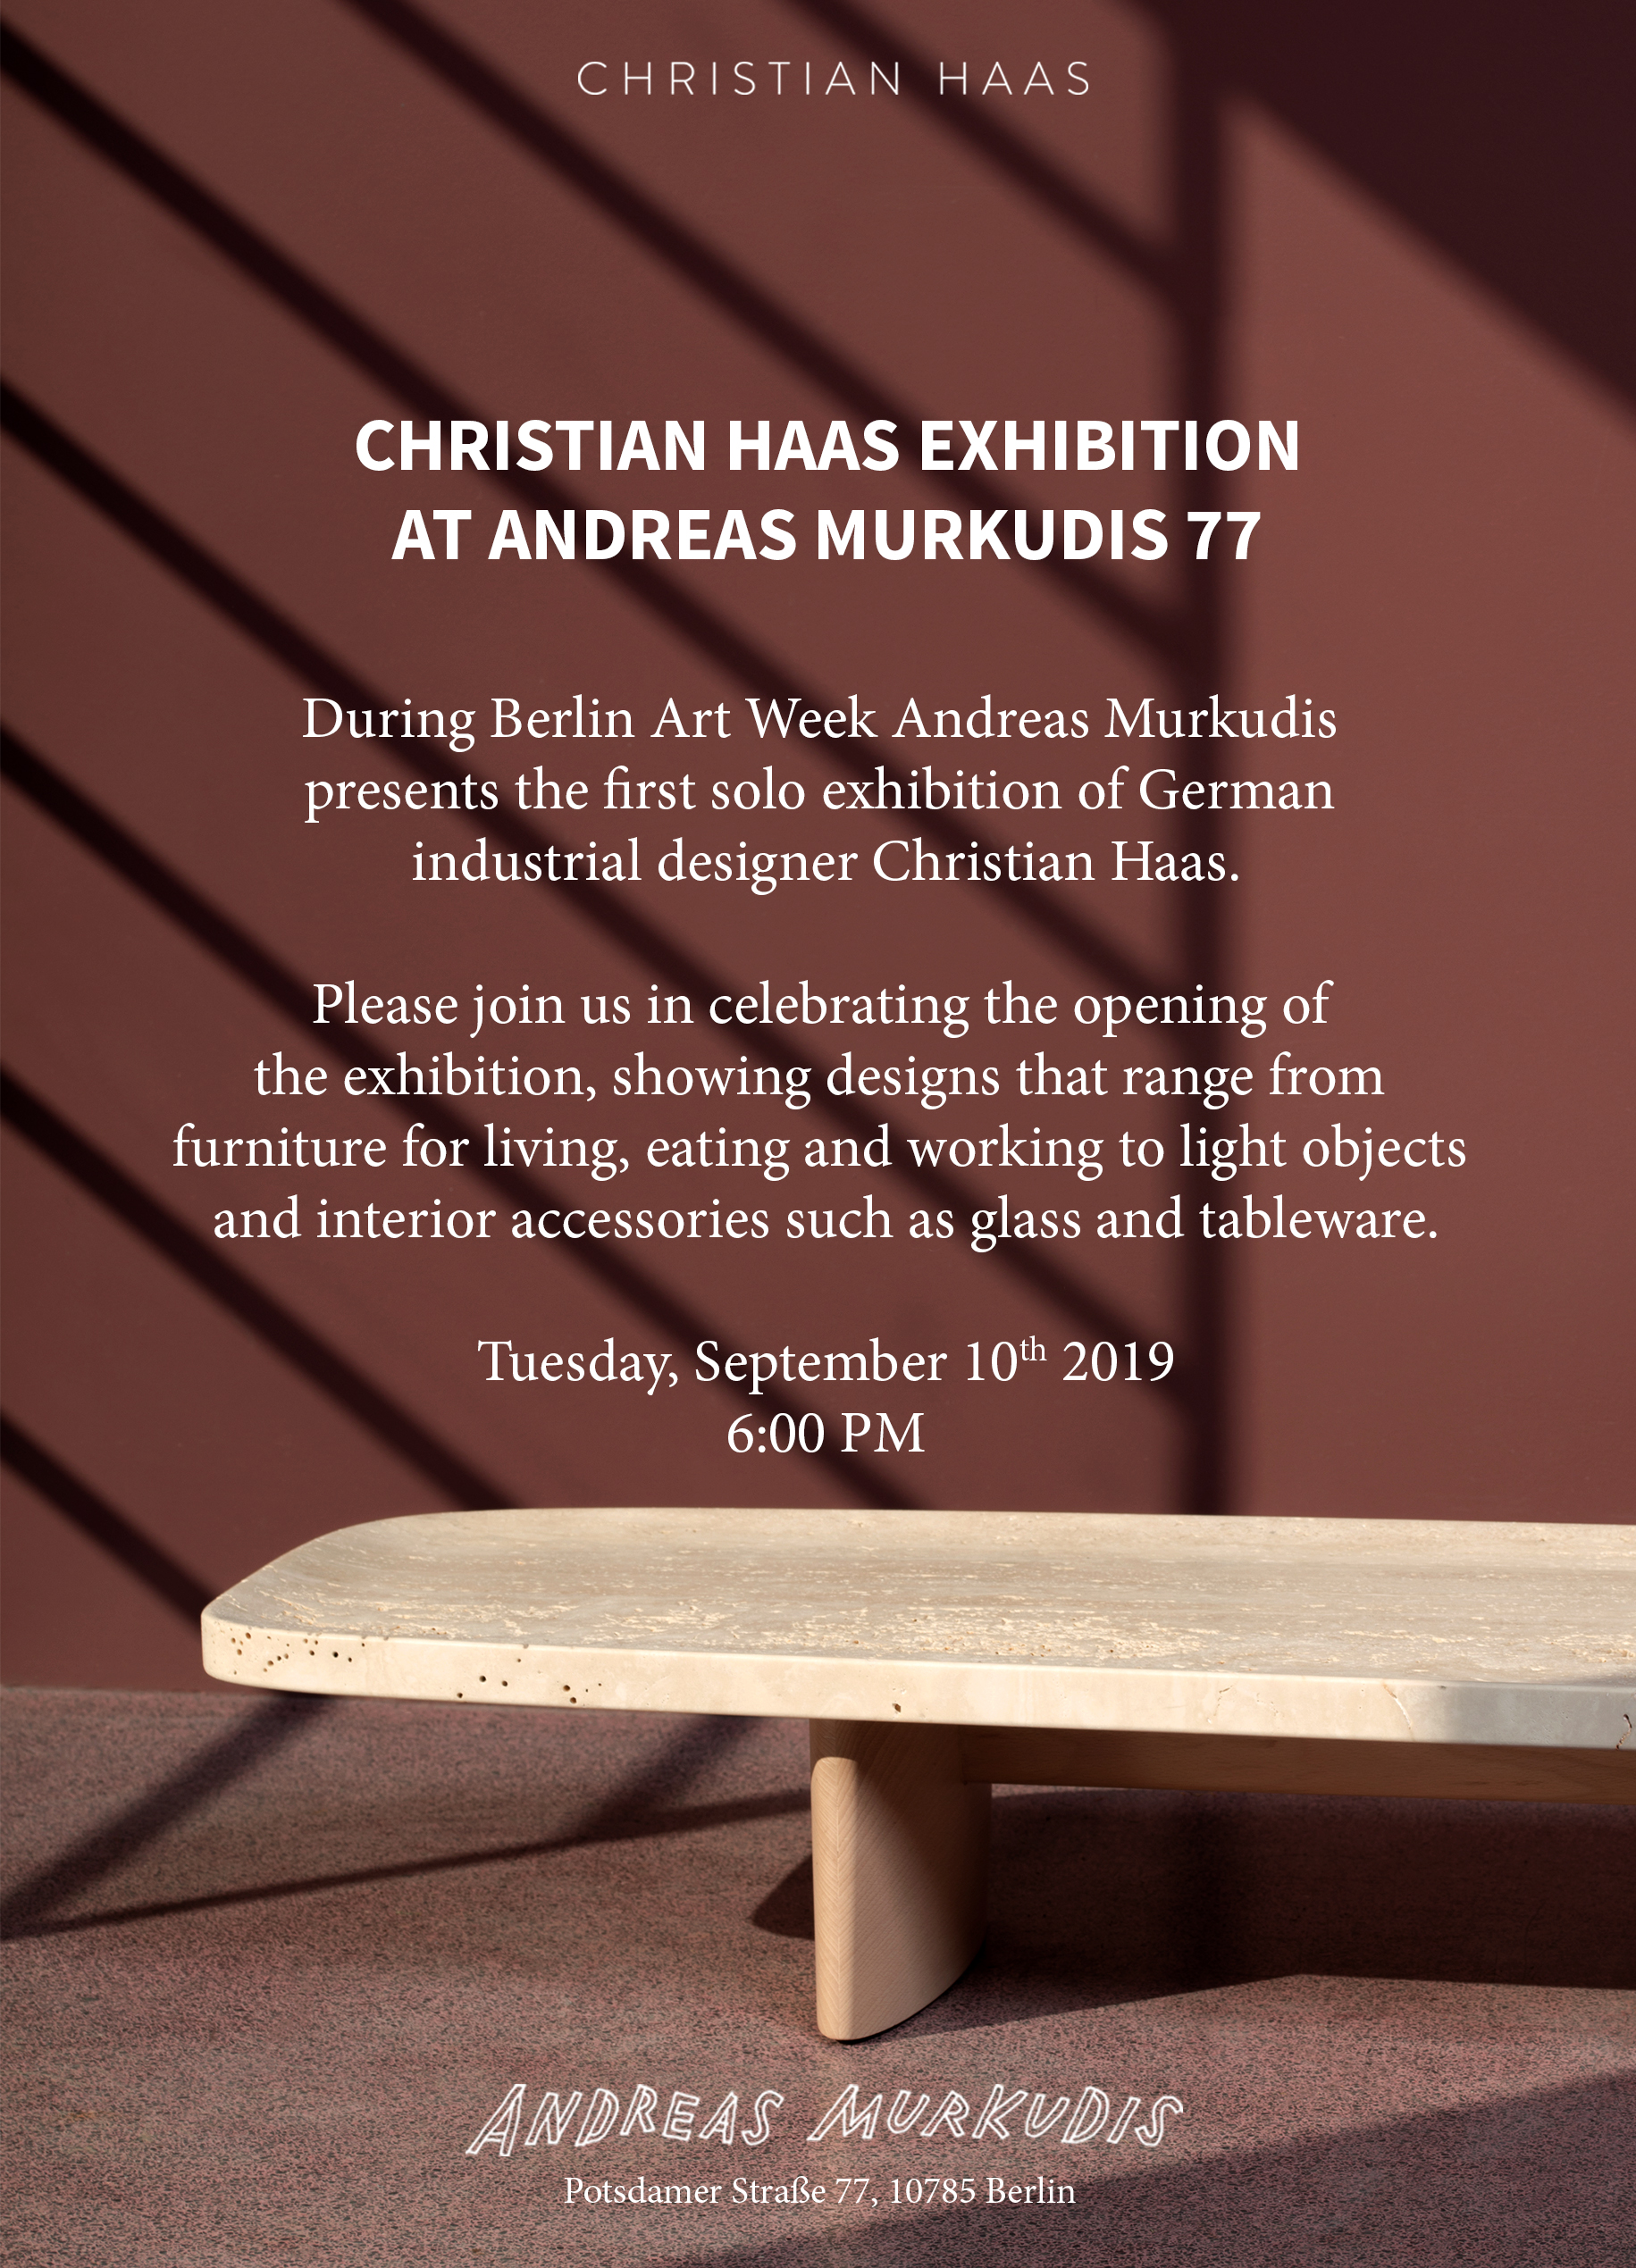 Christian Haas Exhibition at Andreas Murkudis 77